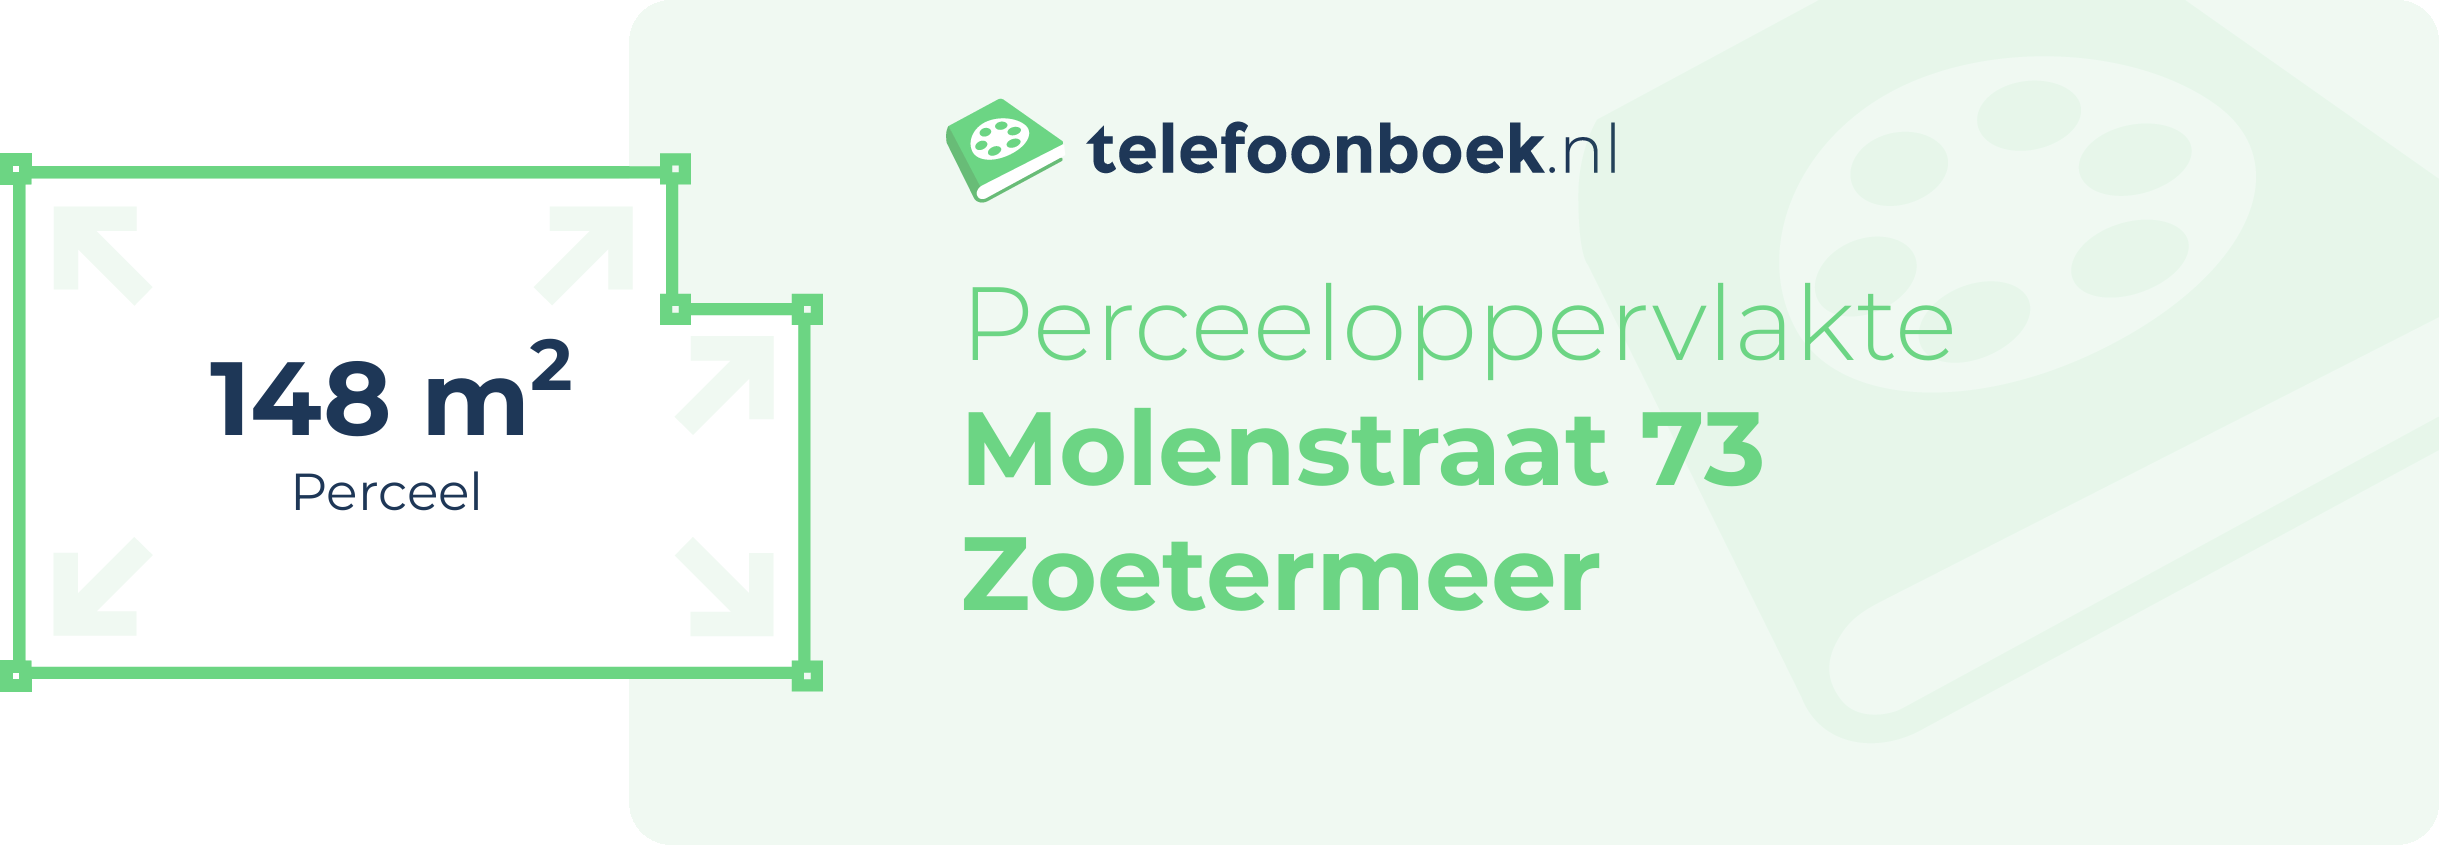 Perceeloppervlakte Molenstraat 73 Zoetermeer